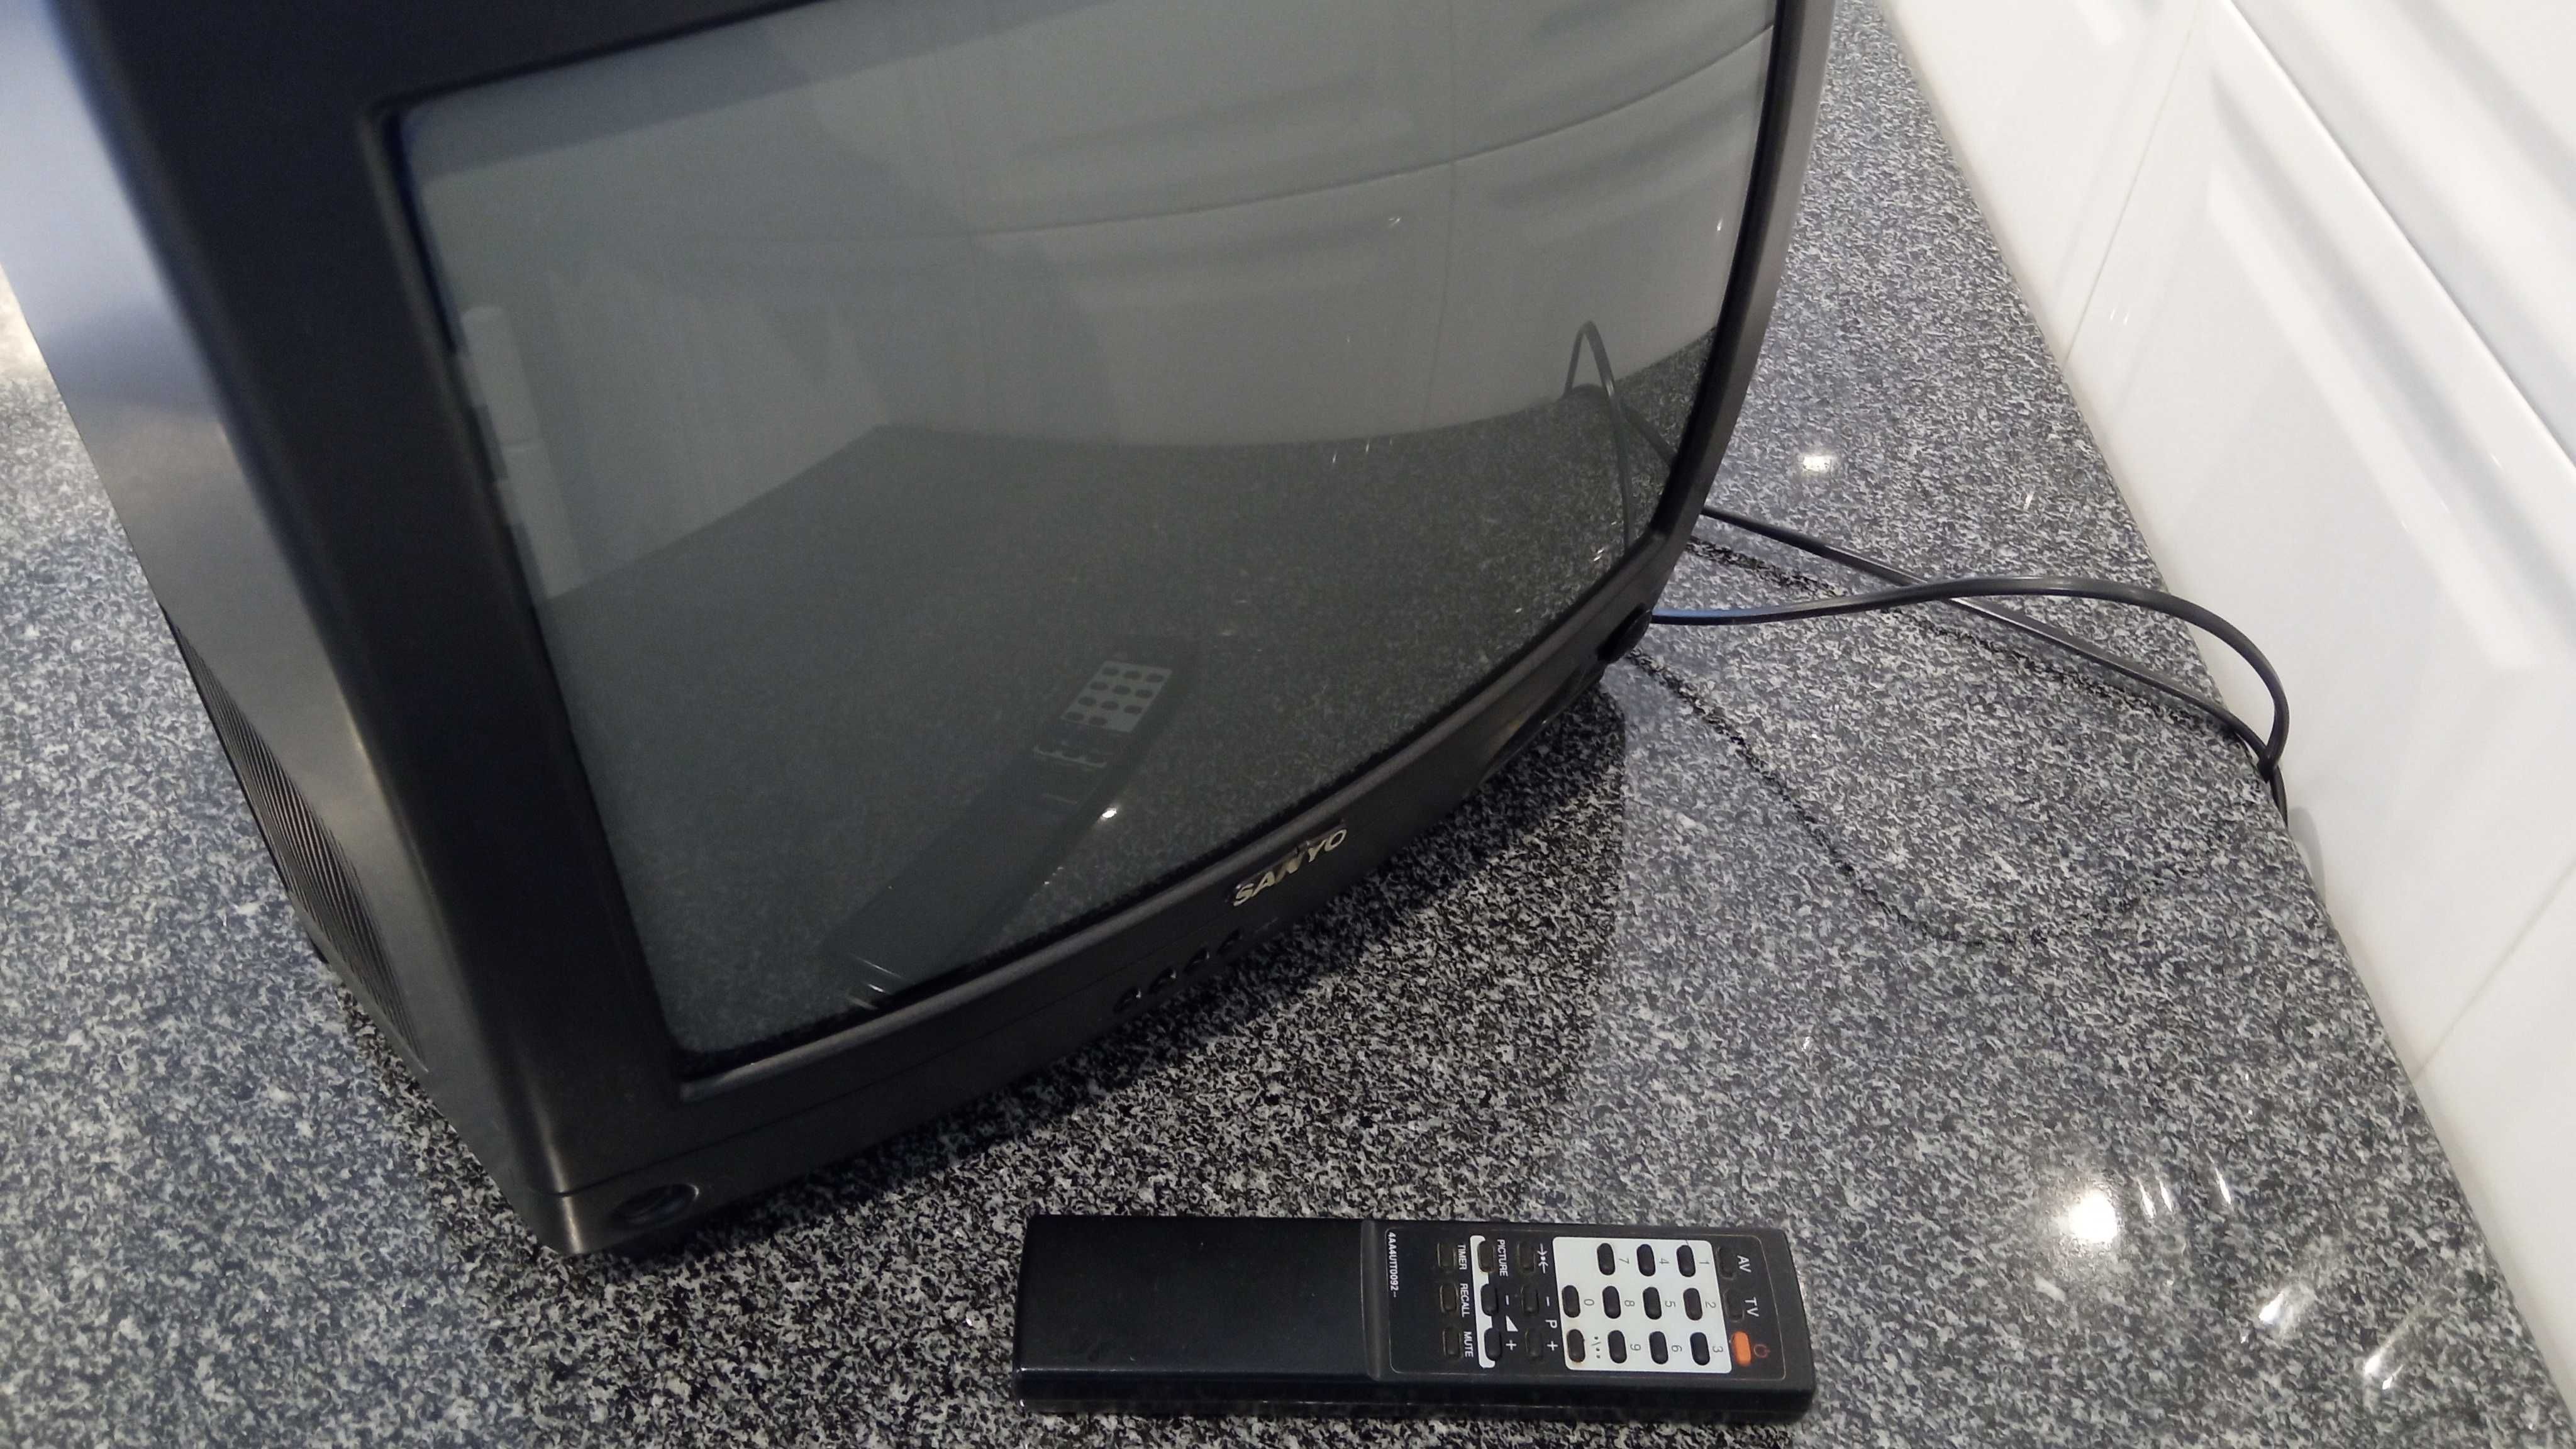 Televisão Sanyo Ecrã de 35cm (13")